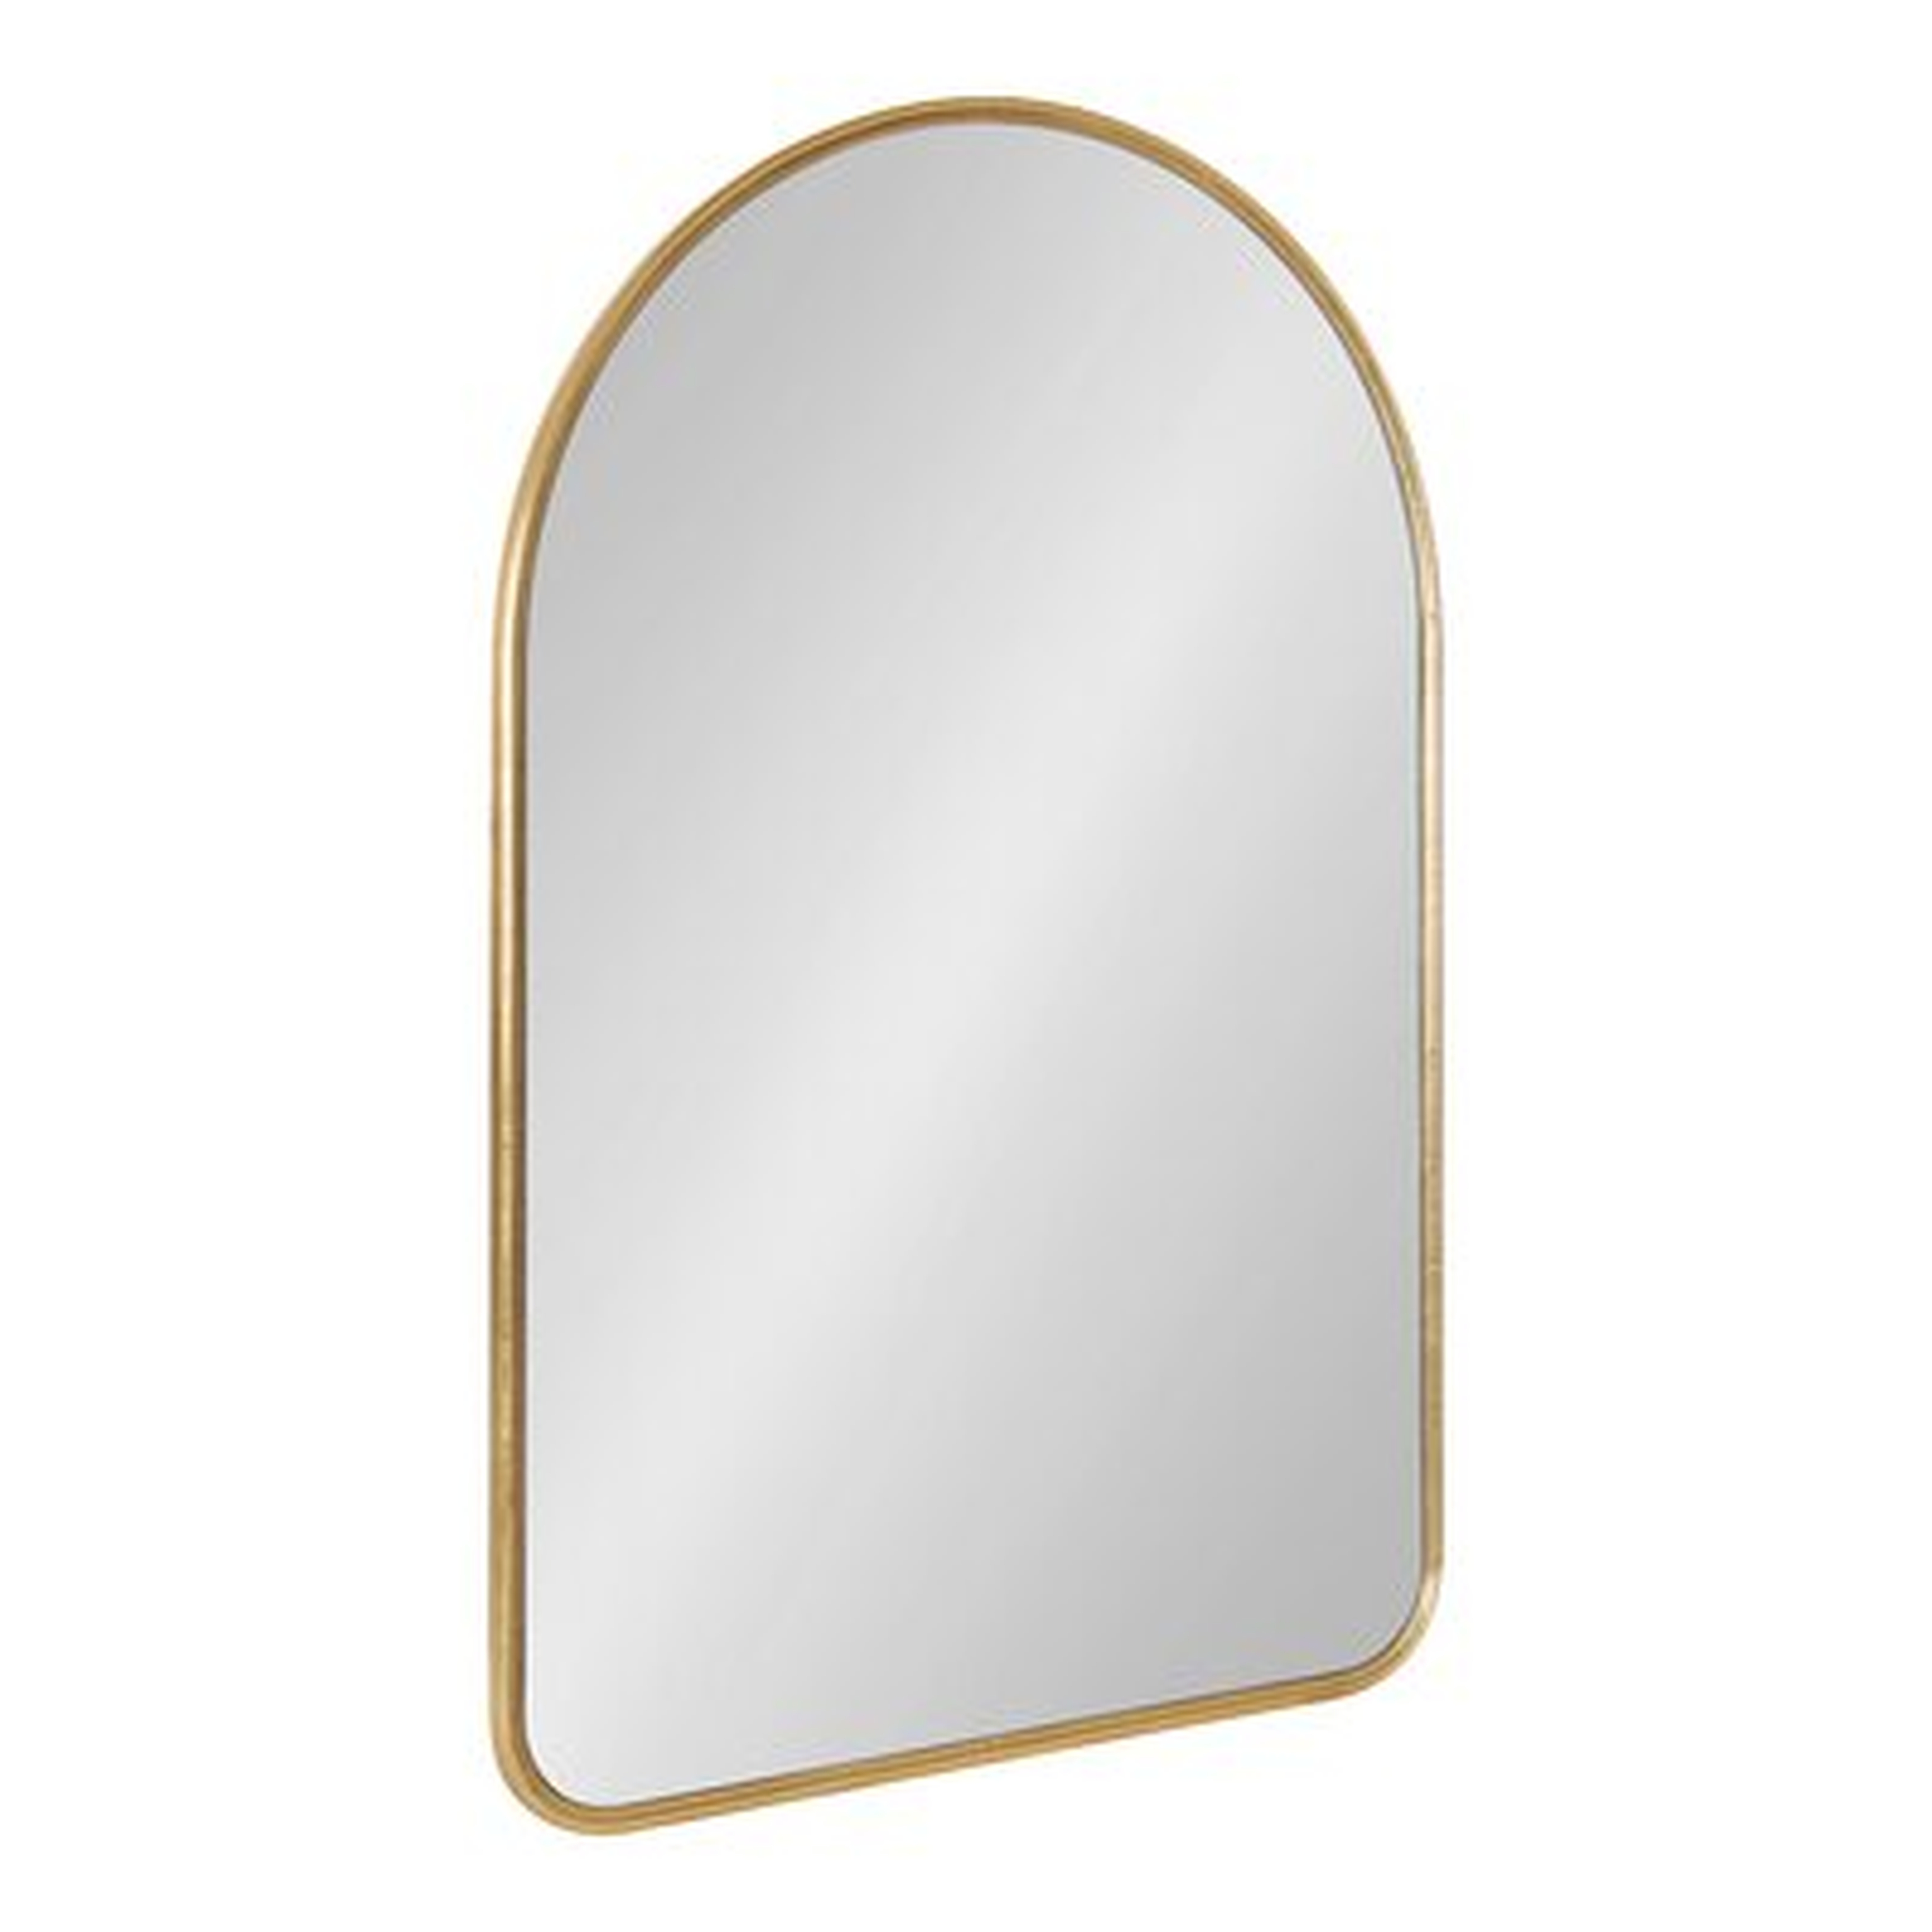 George Oliver Caskill Framed Arch Wall Mirror 24X36 Gold - Wayfair